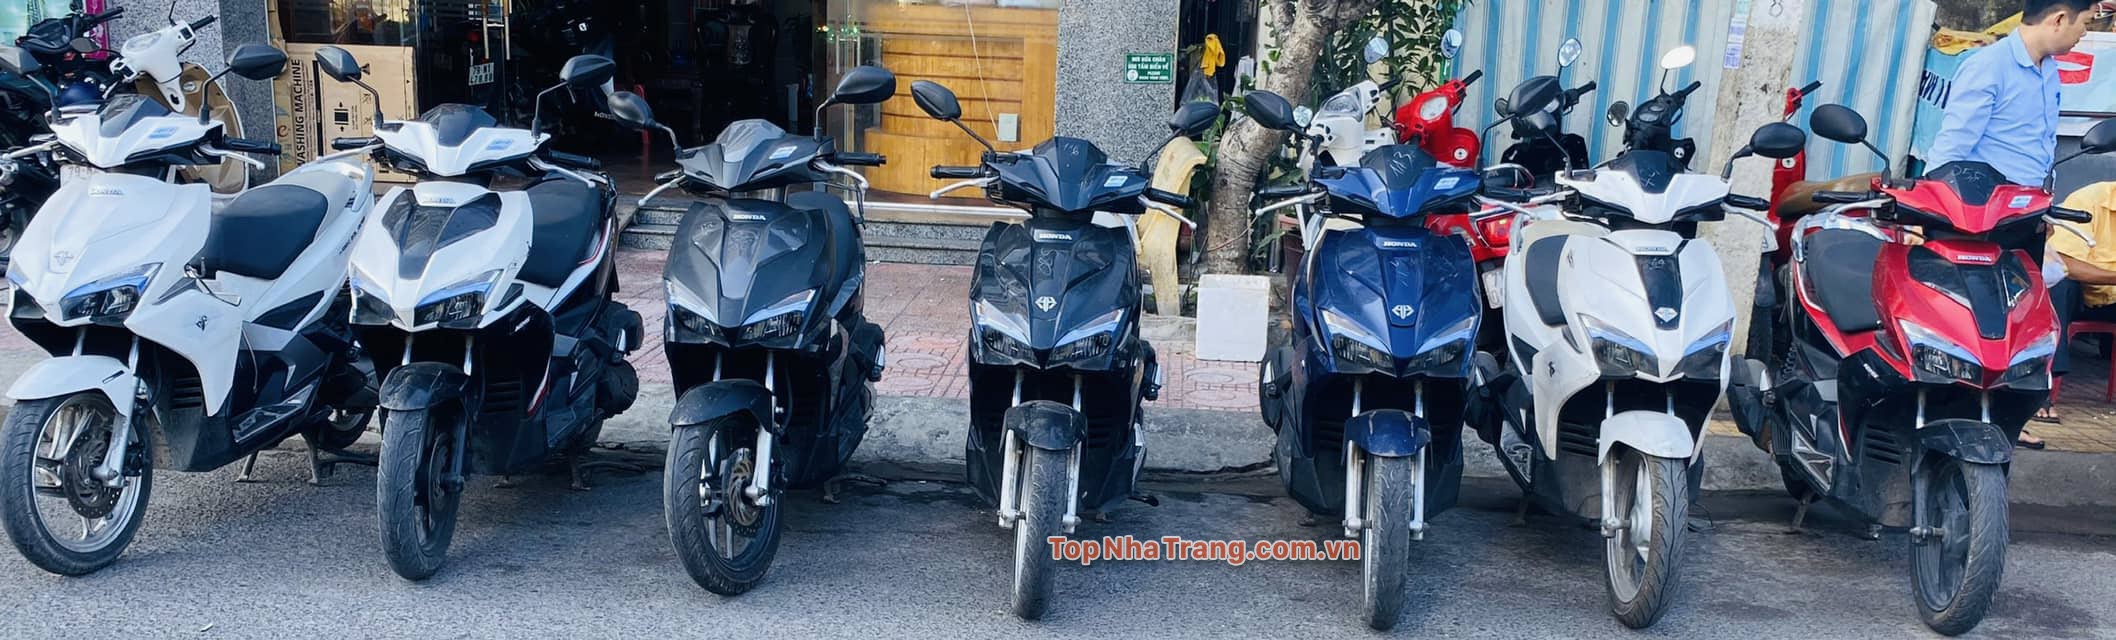 Dịch vụ thuê xe máy Nha Trang uy tín giá rẻ